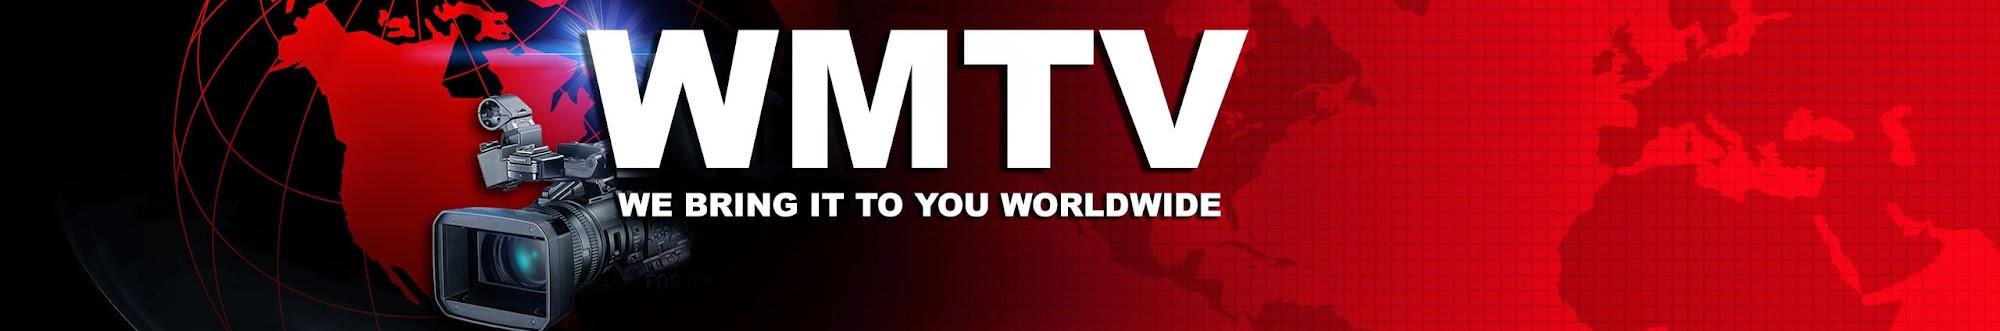 WMTV